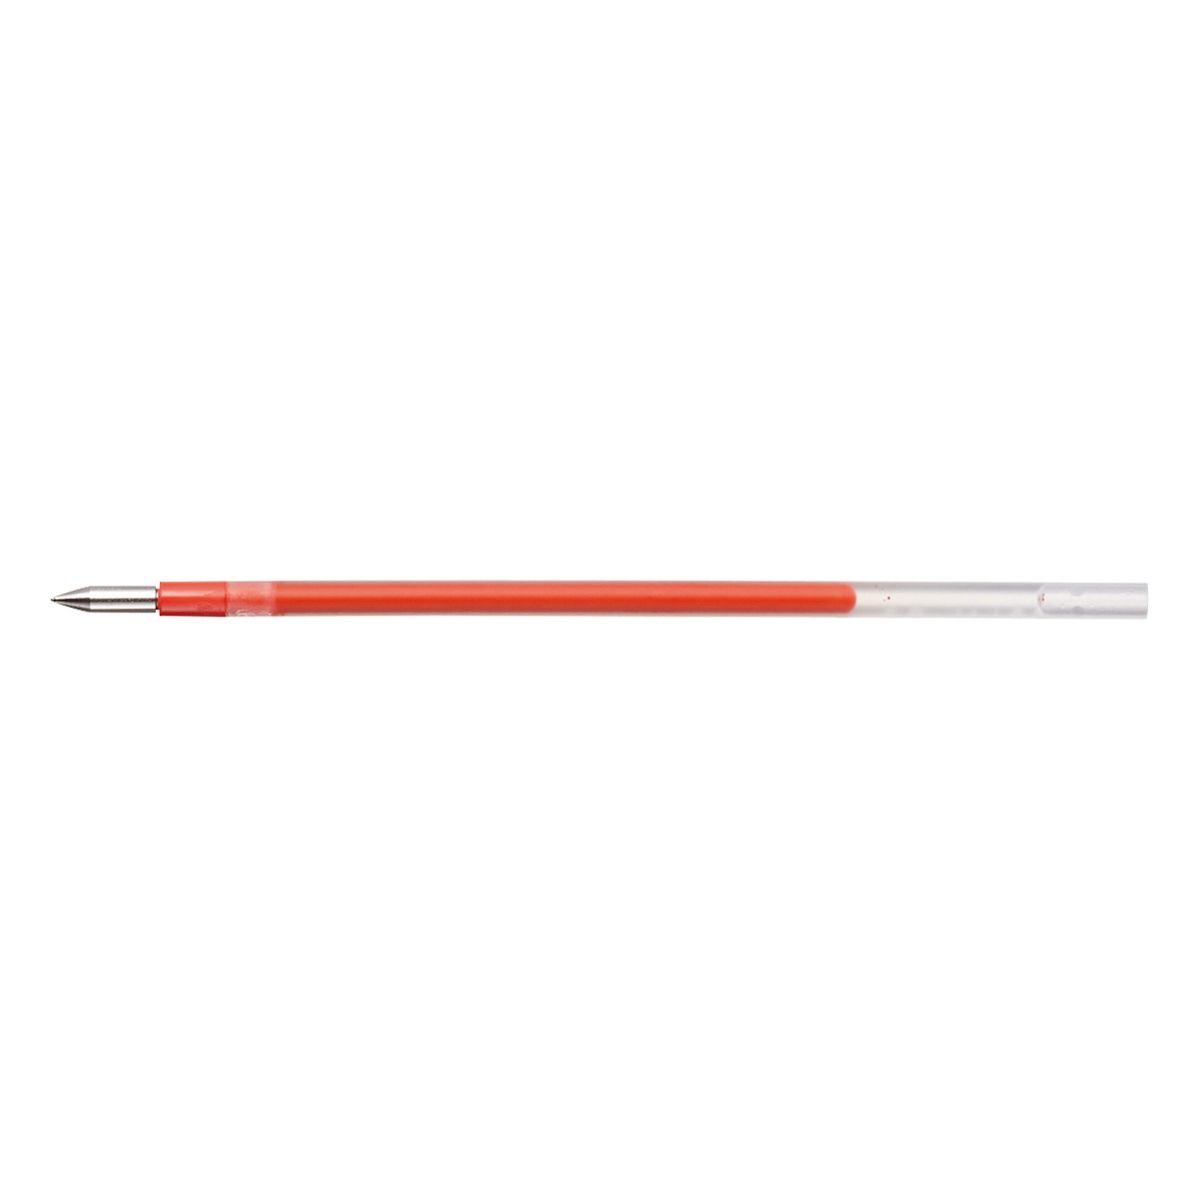 Wkład do długopisu Uni do długSXE-400 czerwony, czerwony (SXR-80)